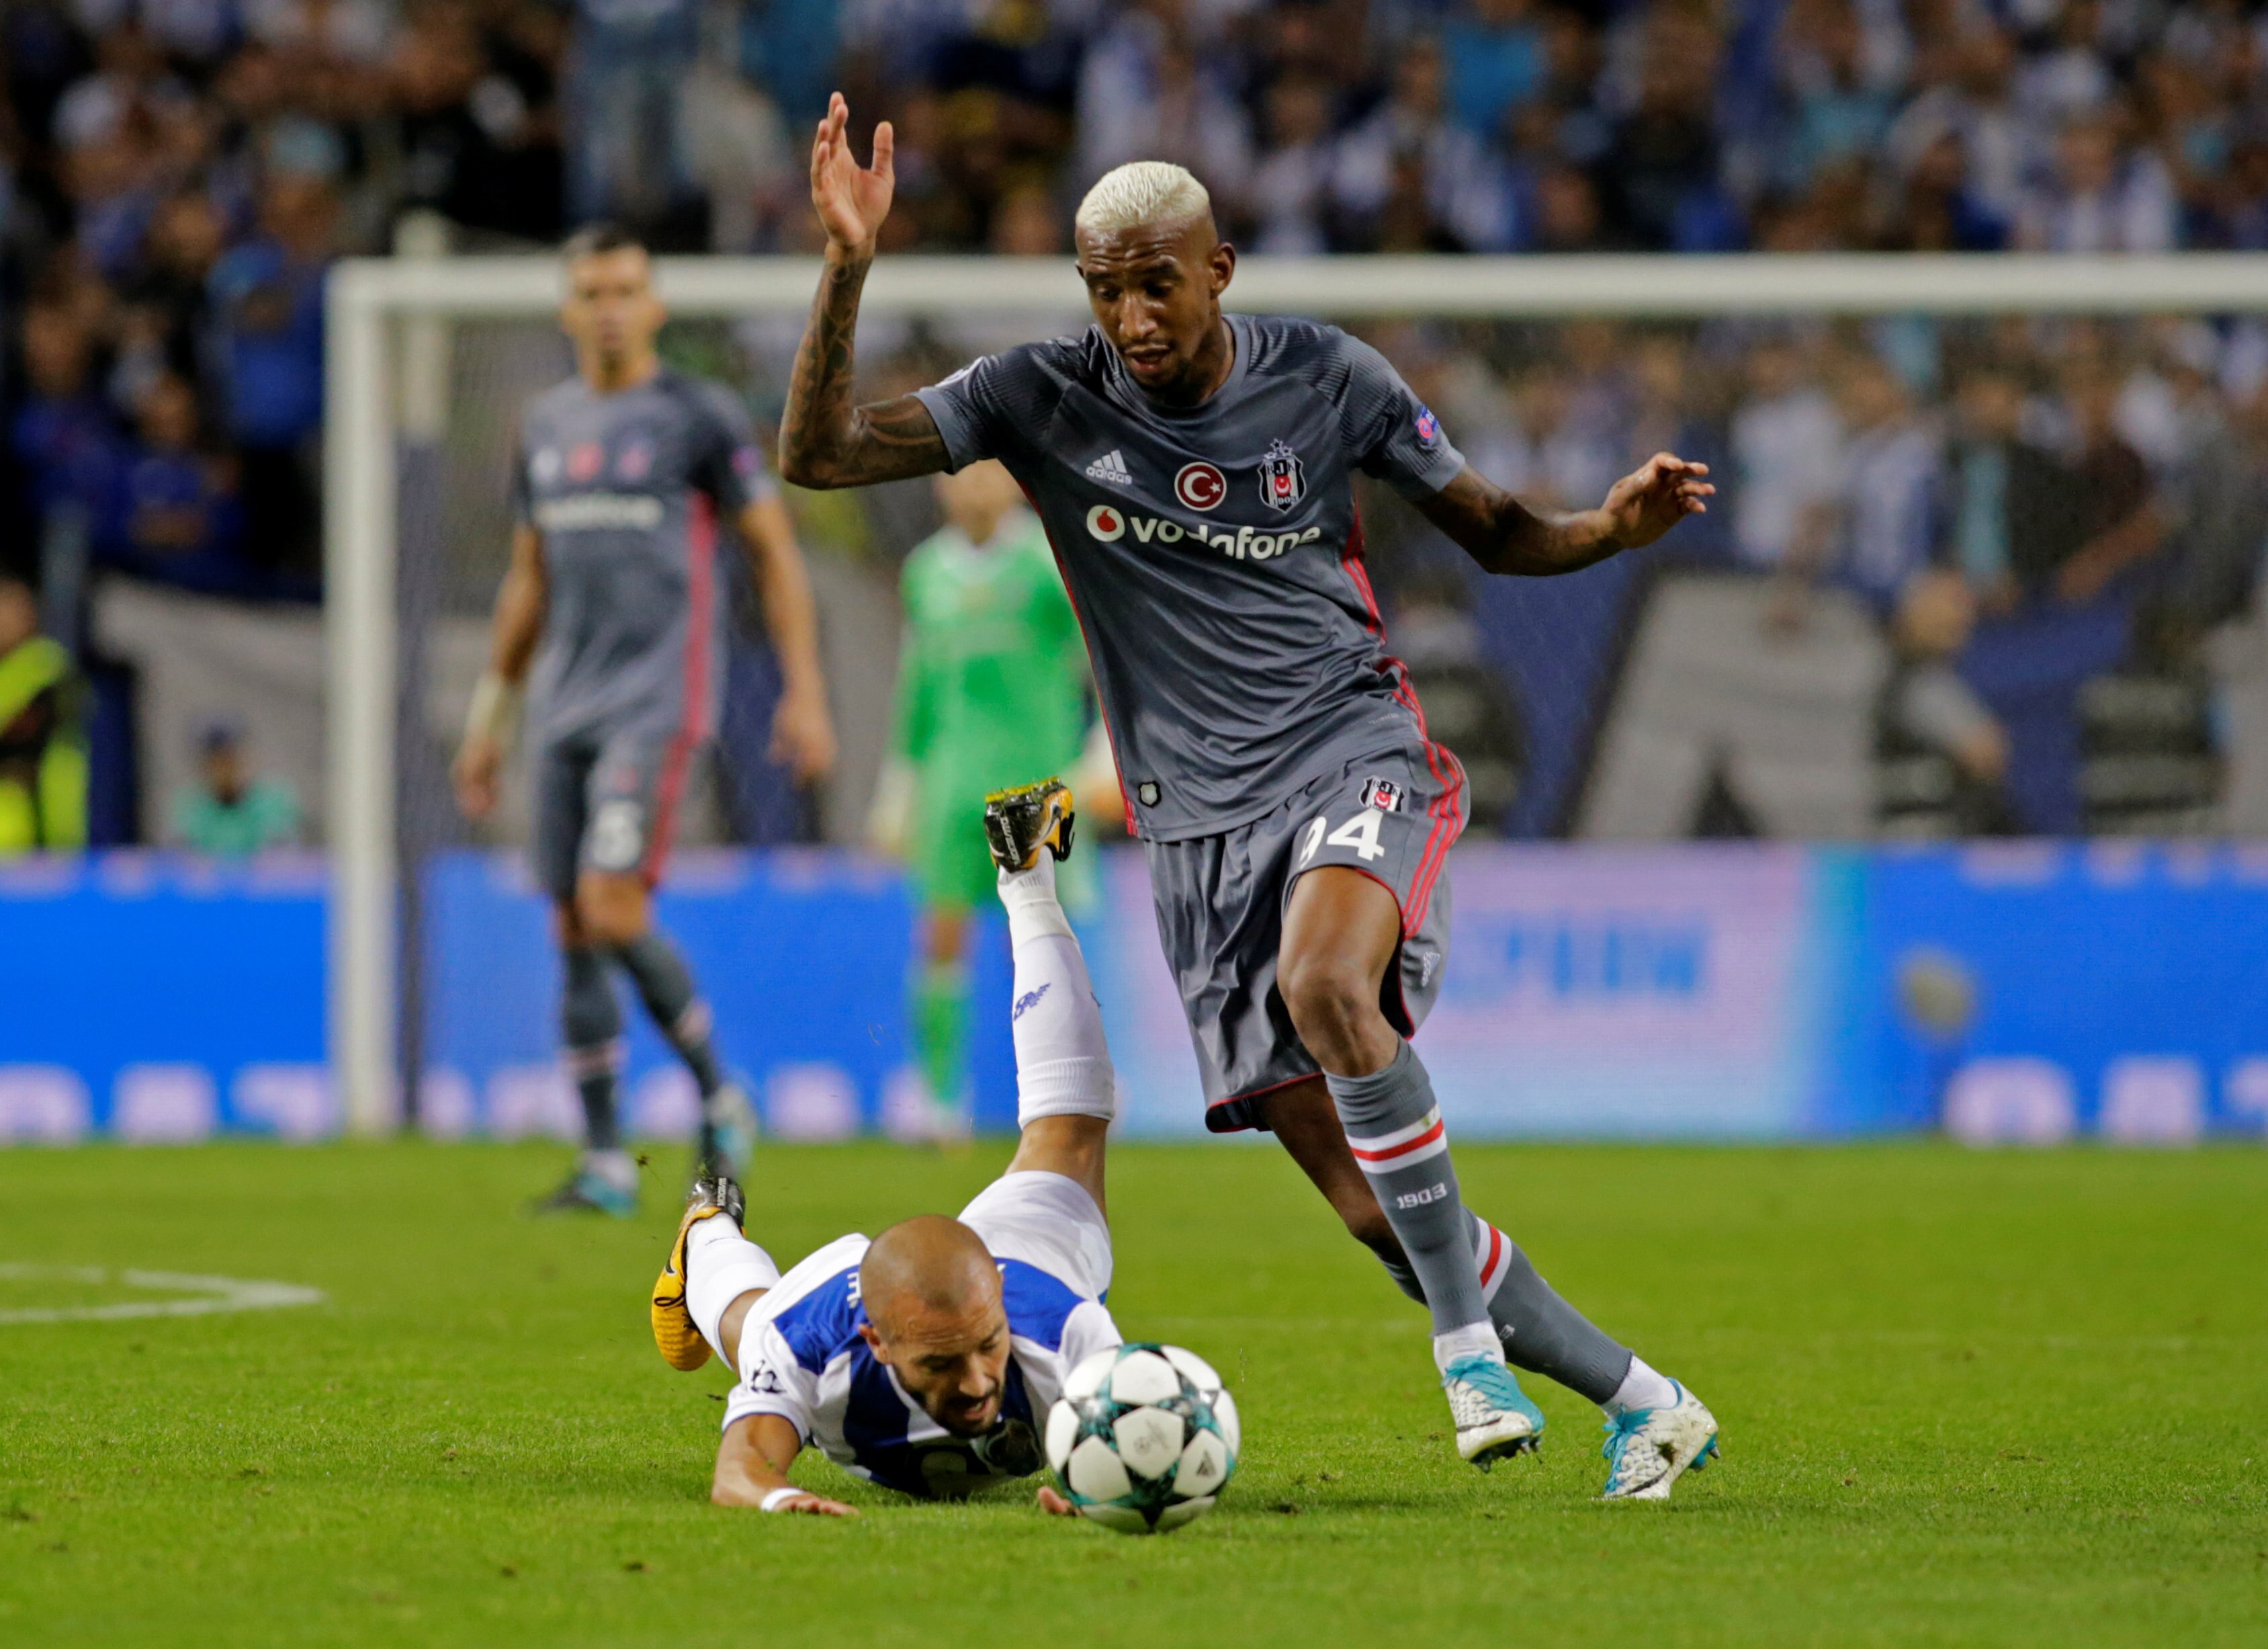 Besiktas bate RB Leipzig com gol de Talisca e lidera grupo; Porto atropela  Monaco